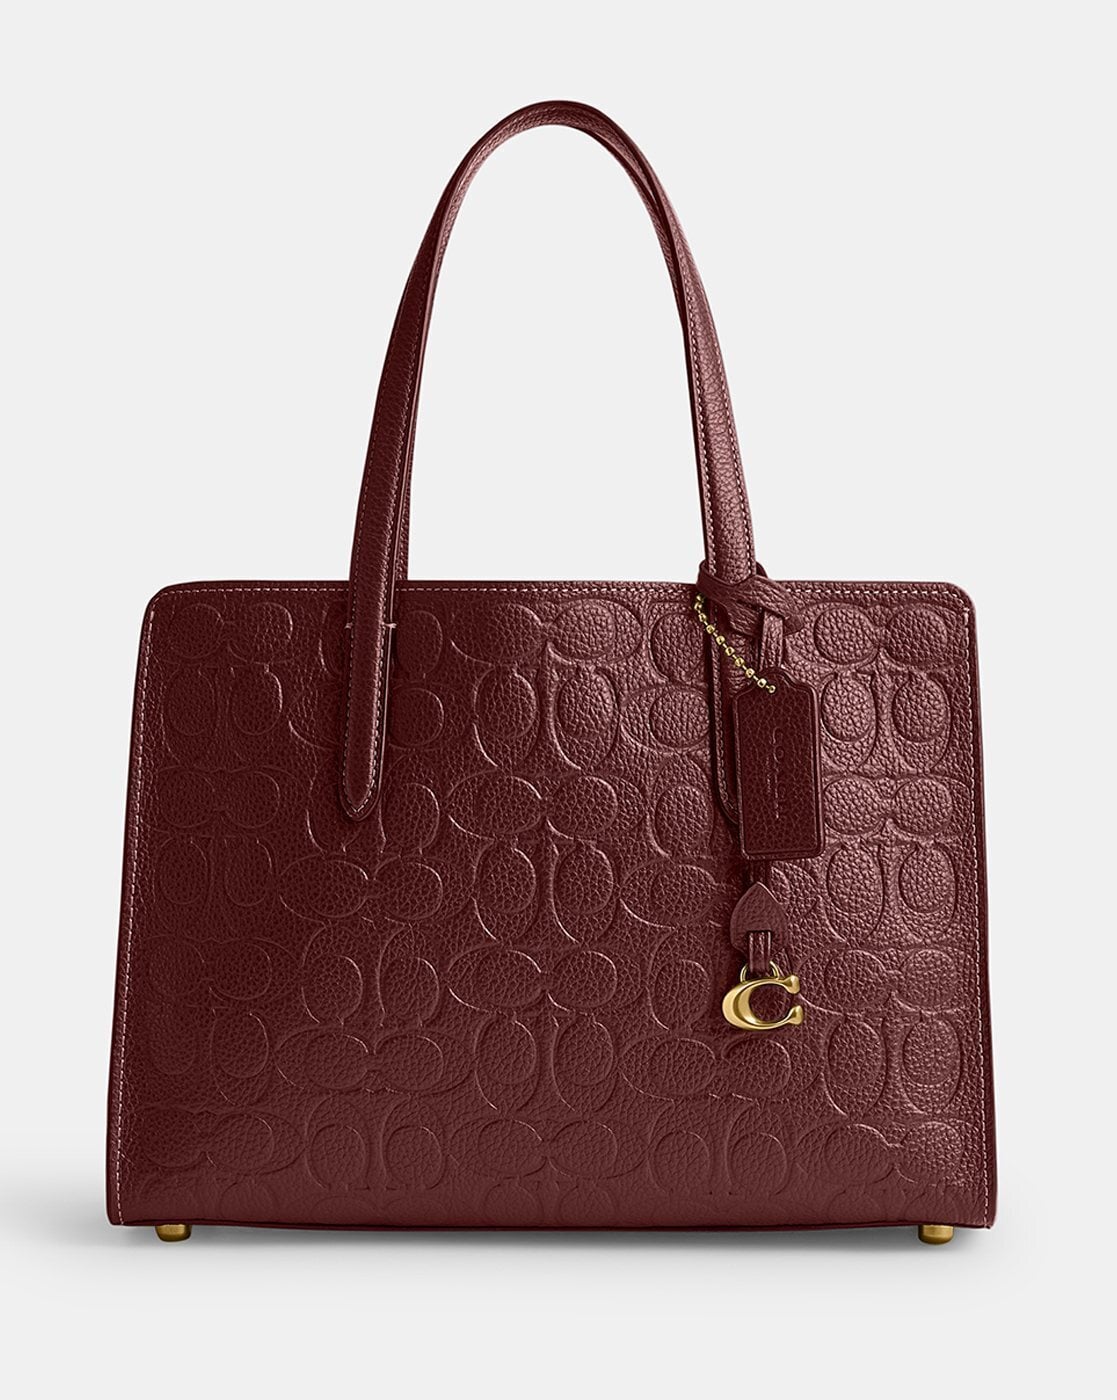 Coach tote bag Signature Ladies 5696 – luxebags singapore